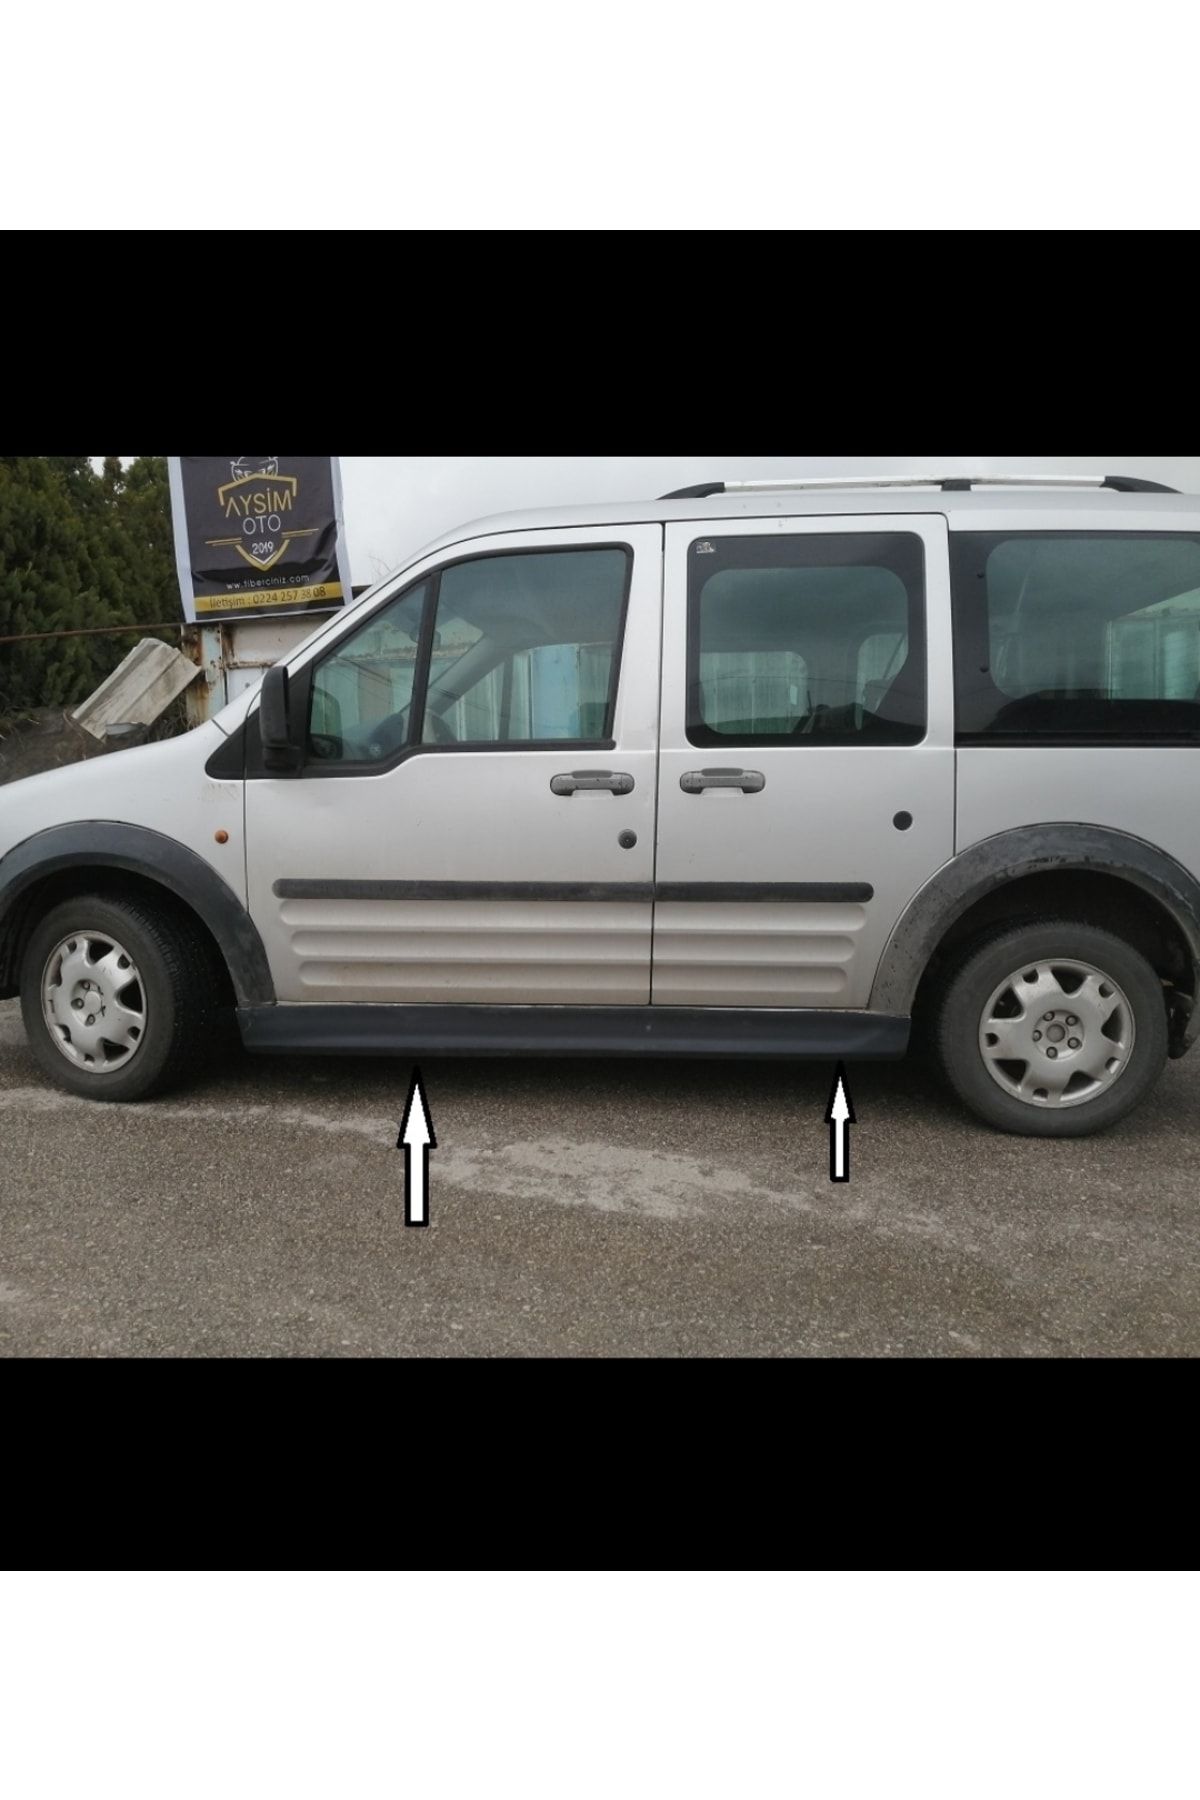 Alkan Garage Ford Connect Marşpiyel Takımı Kısa Şaşe Uyumludur

(boyasız)